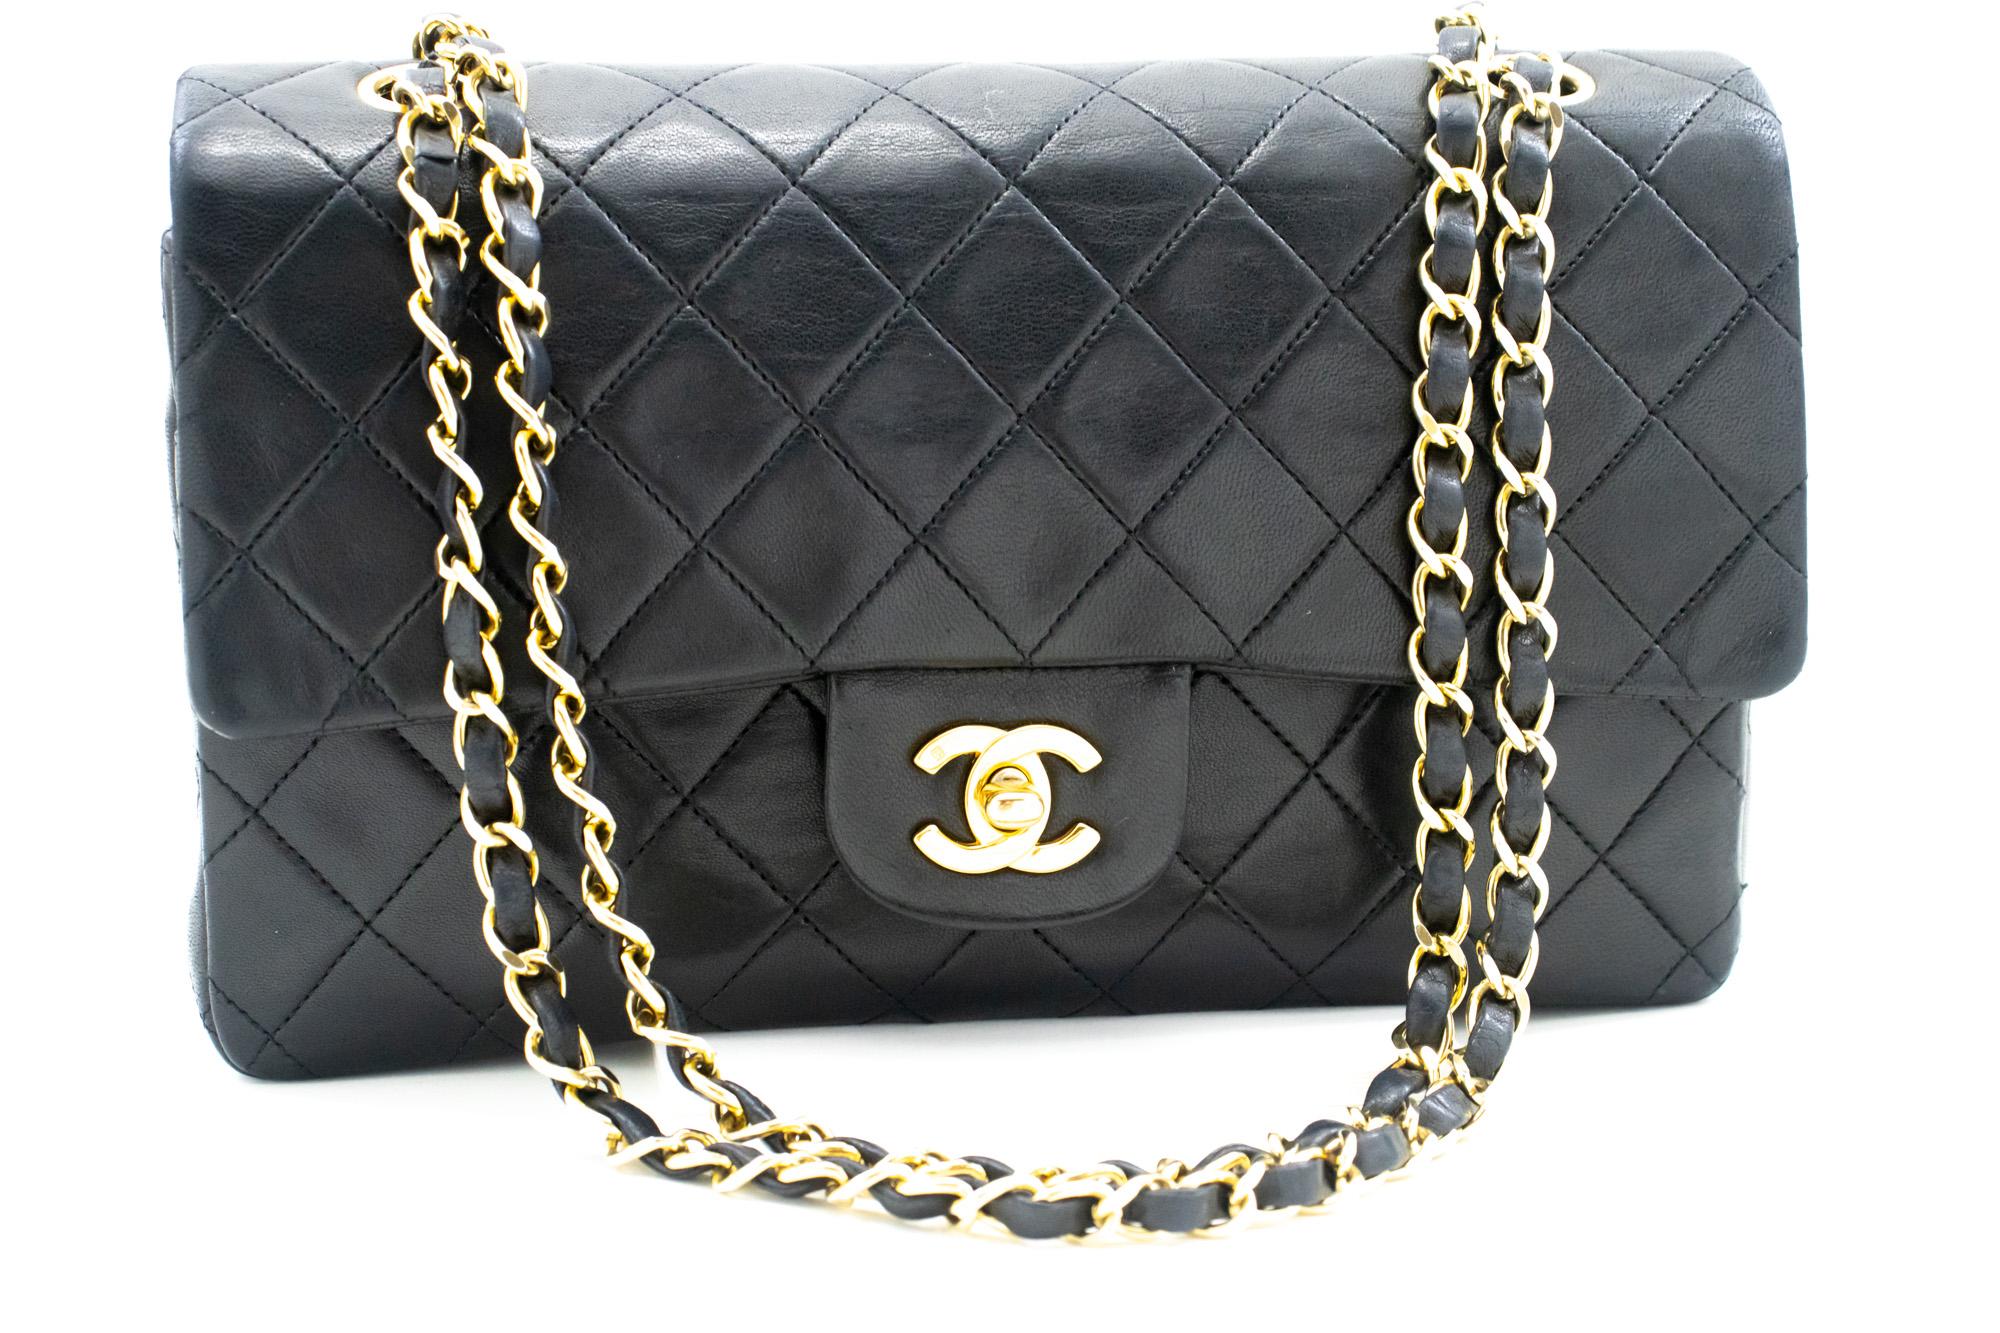 Authentique Chanel Classic Double Flap Medium Chain Shoulder Bag Black Lamb. La couleur est noire. Le matériau extérieur est le cuir. Le motif est solide. Cet article est un Vintage / Classique. L'année de fabrication serait 1989-1991.
Conditions et